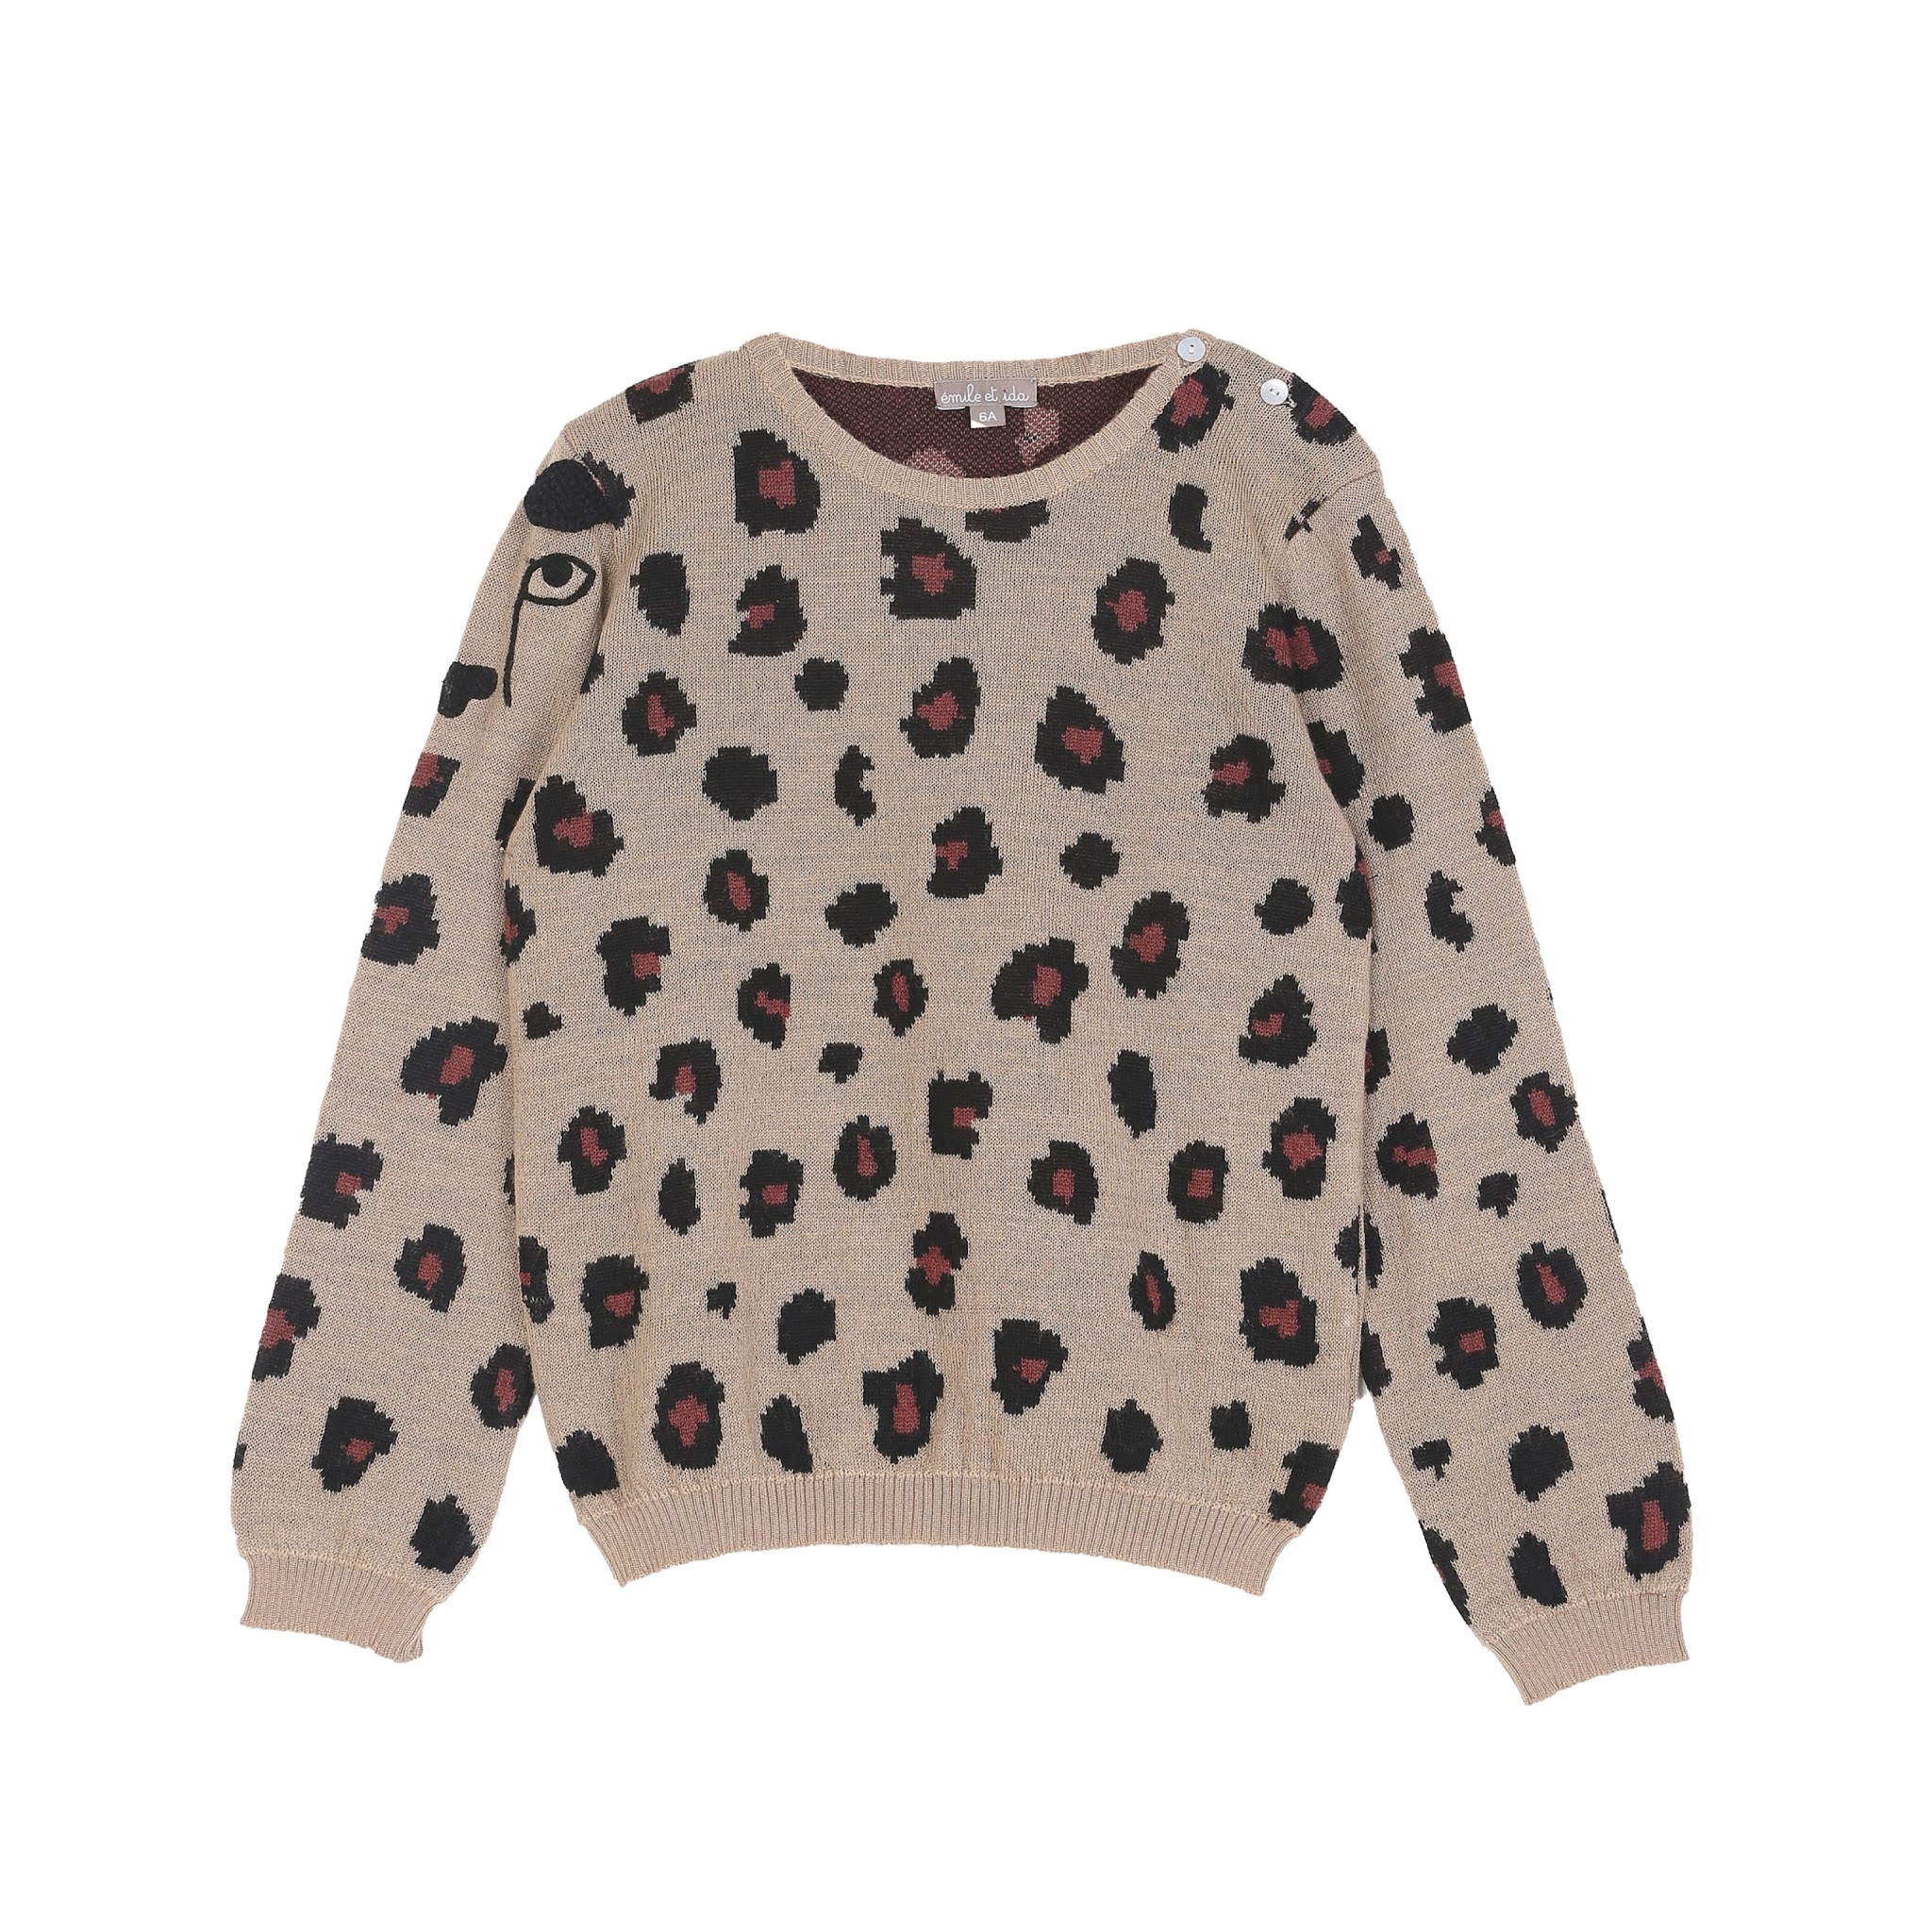 Leopard Wool Sweater from Emile et Ida